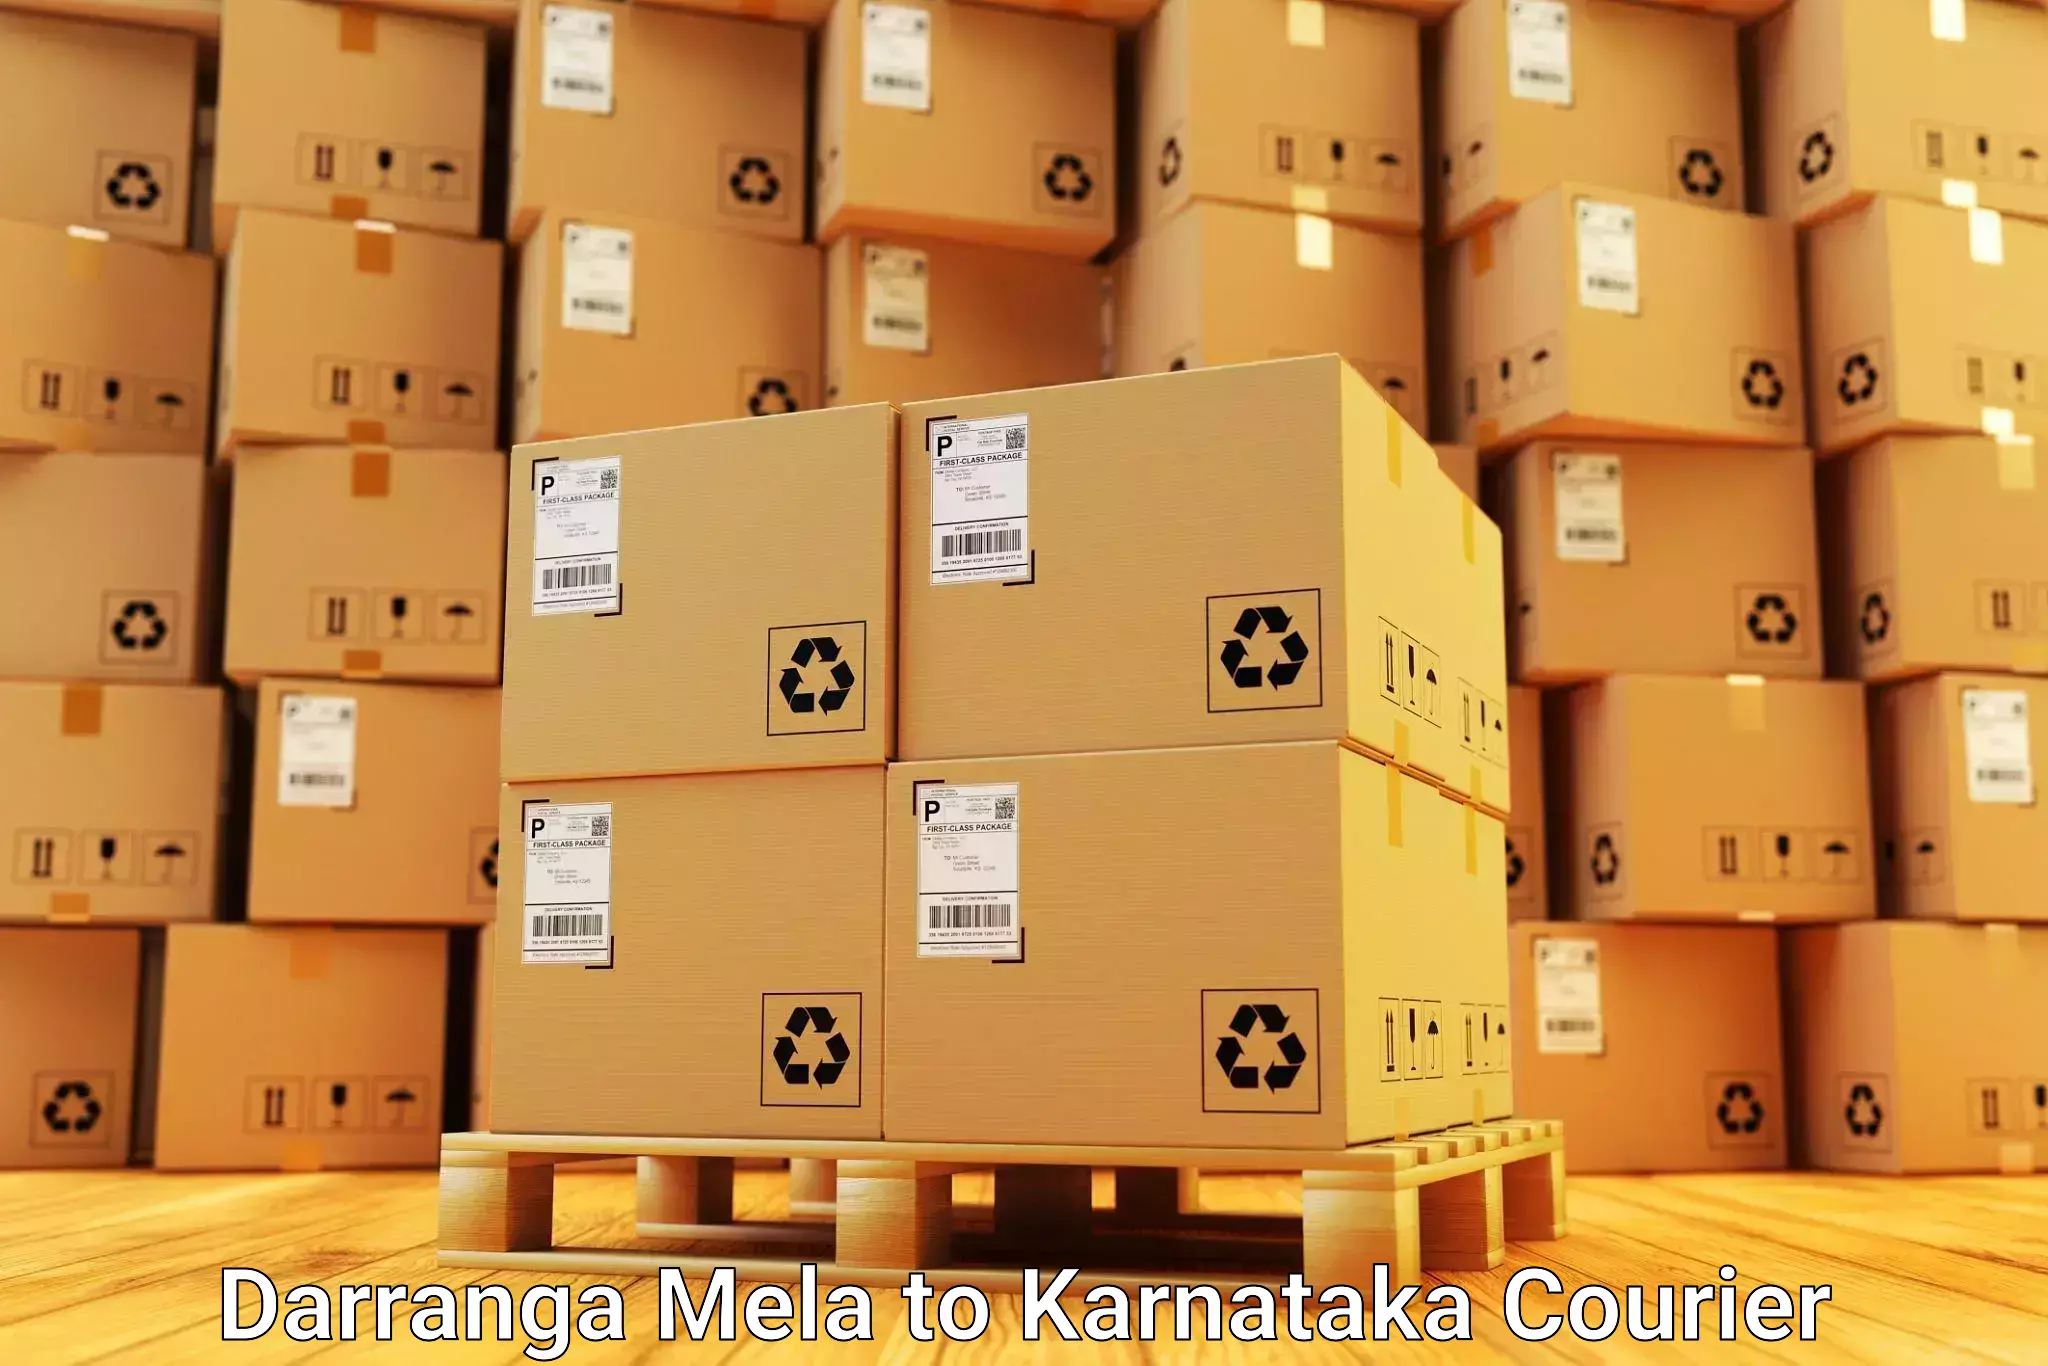 Local home movers Darranga Mela to Karnataka